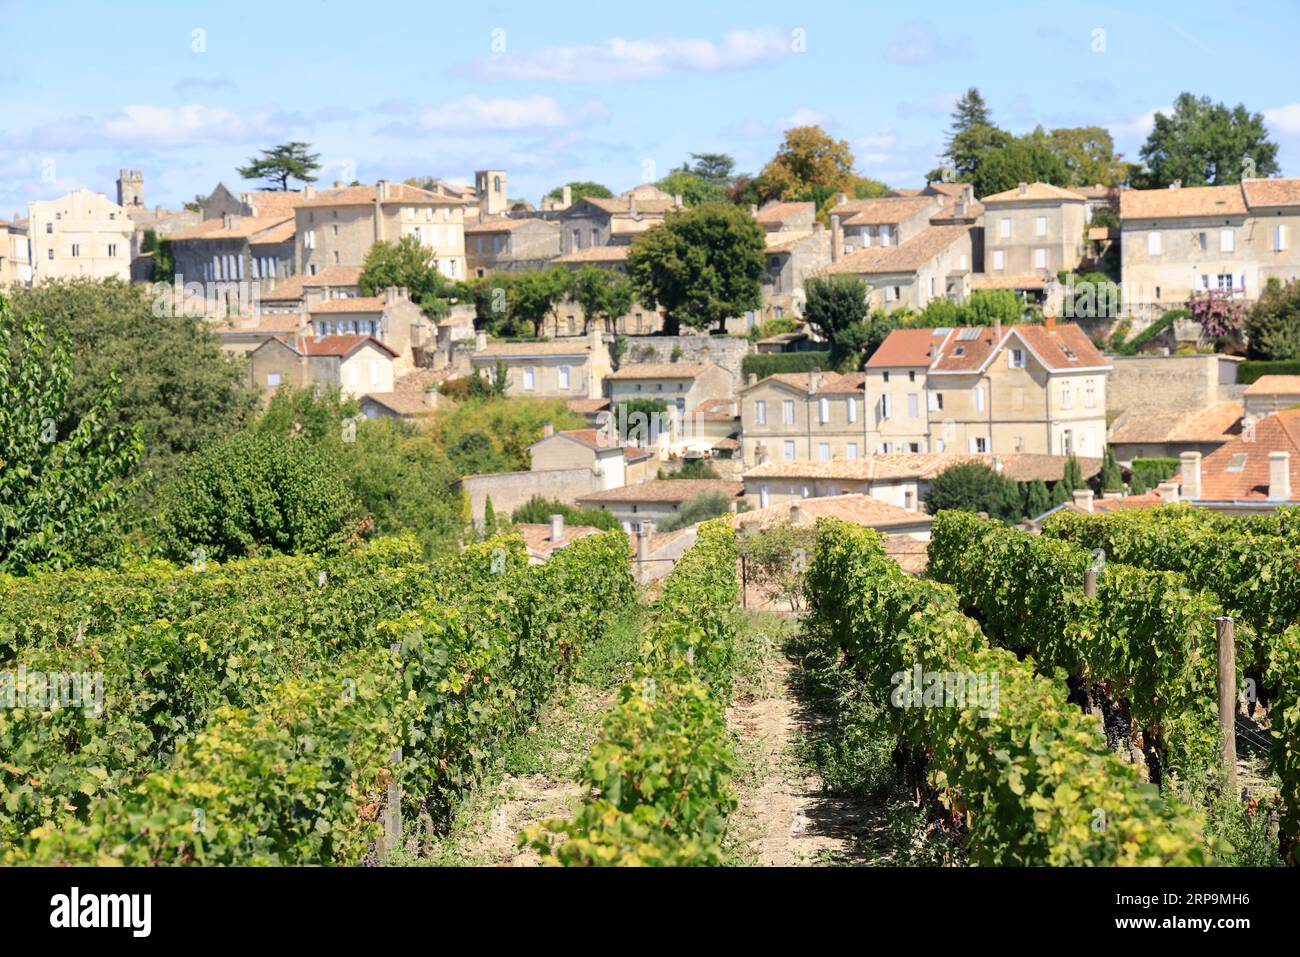 Vigne, vignoble et Village de Saint-Émilion. Château Ausone domaine viticole de Saint-Émilion classé « Premier Grand Cru », 1er Grand cru classé. Prod Foto Stock